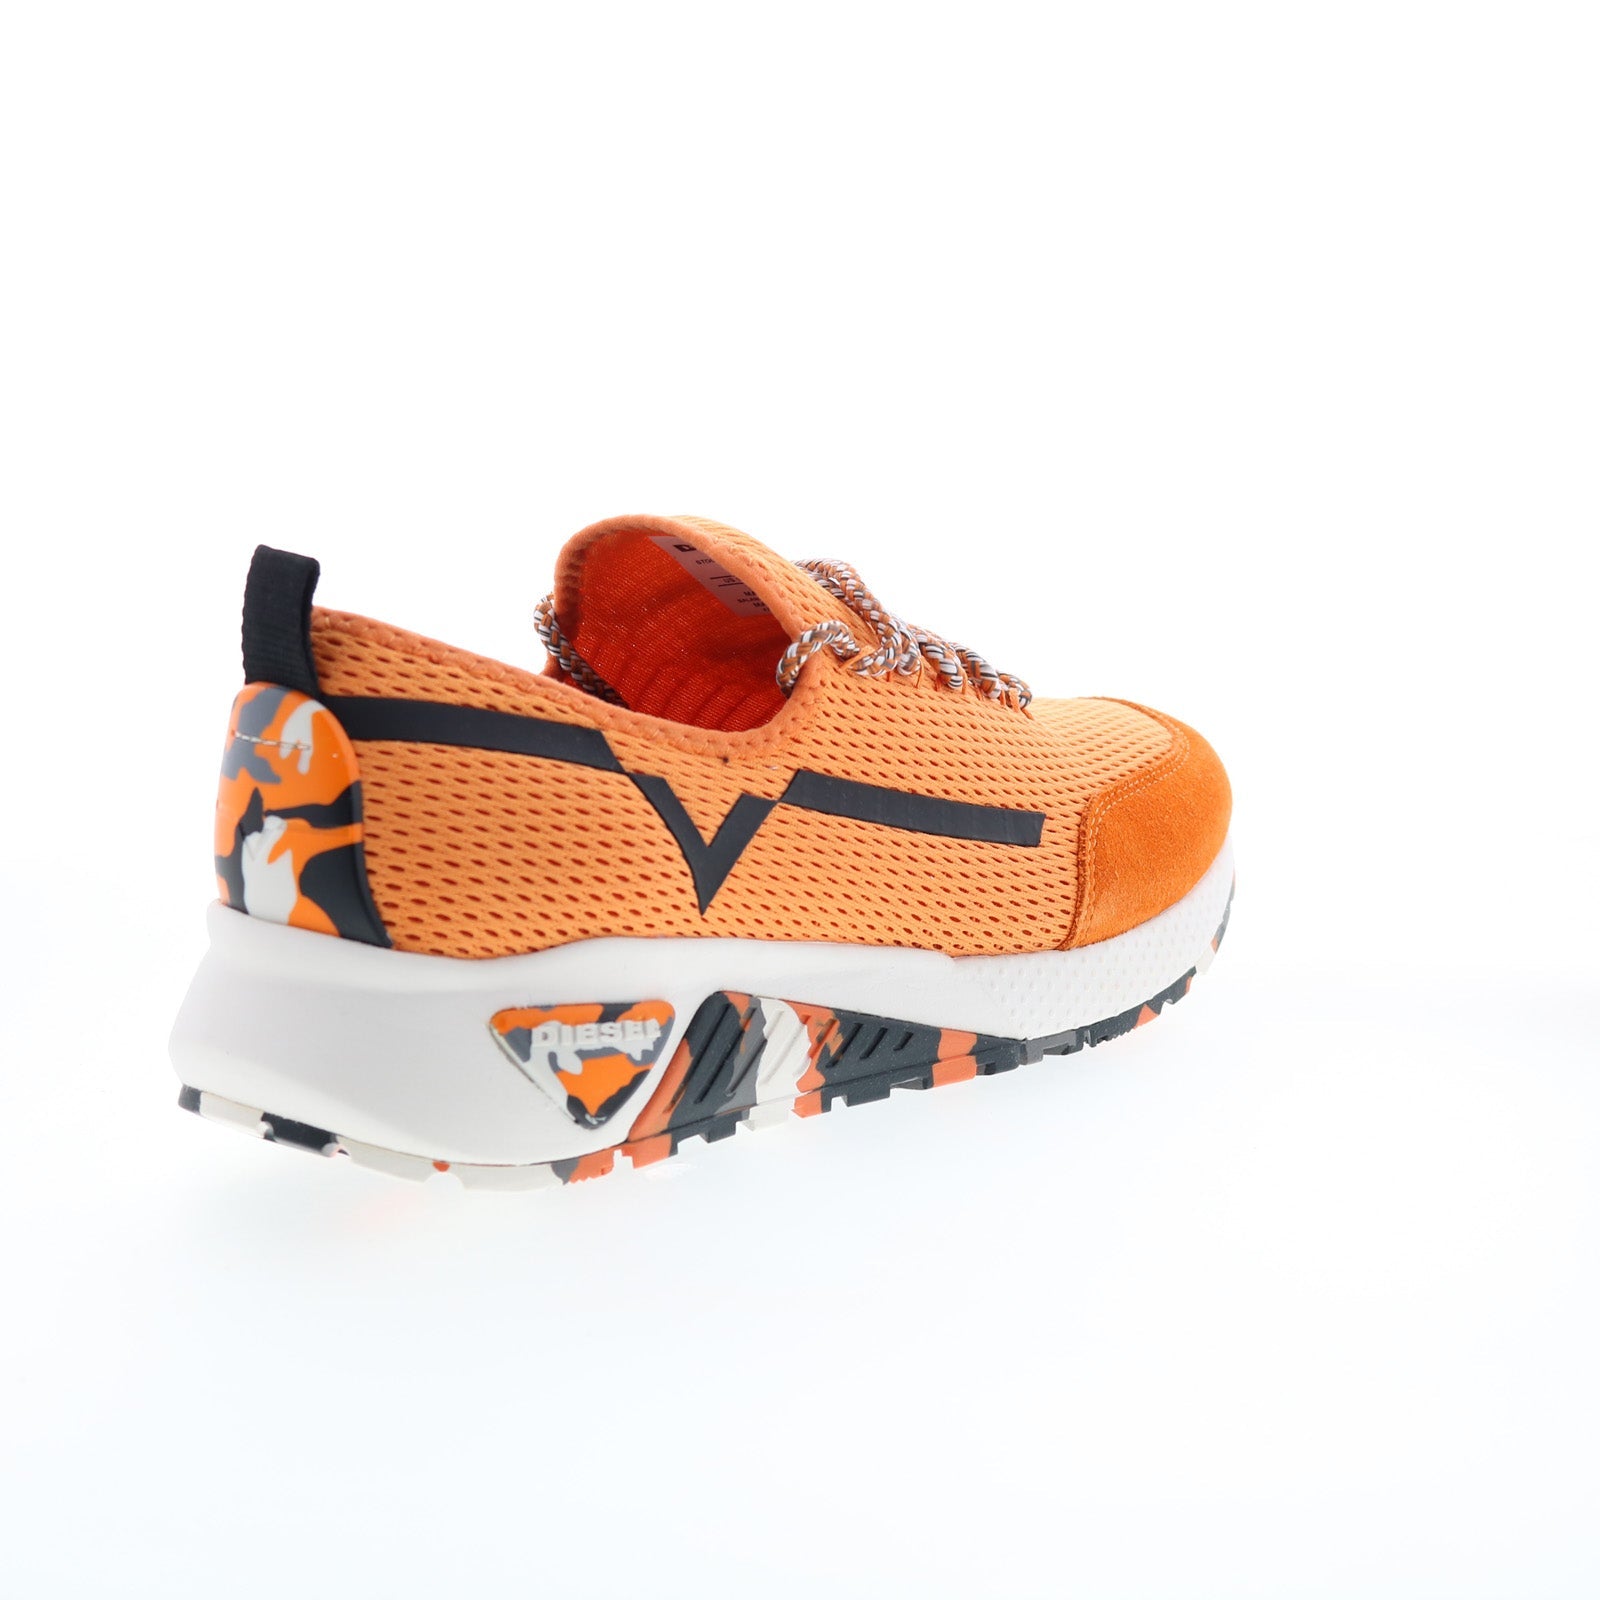 Diesel Skb S-Kby Y01534-PR090-T3131 Mens Orange Lifestyle Sneakers Shoes